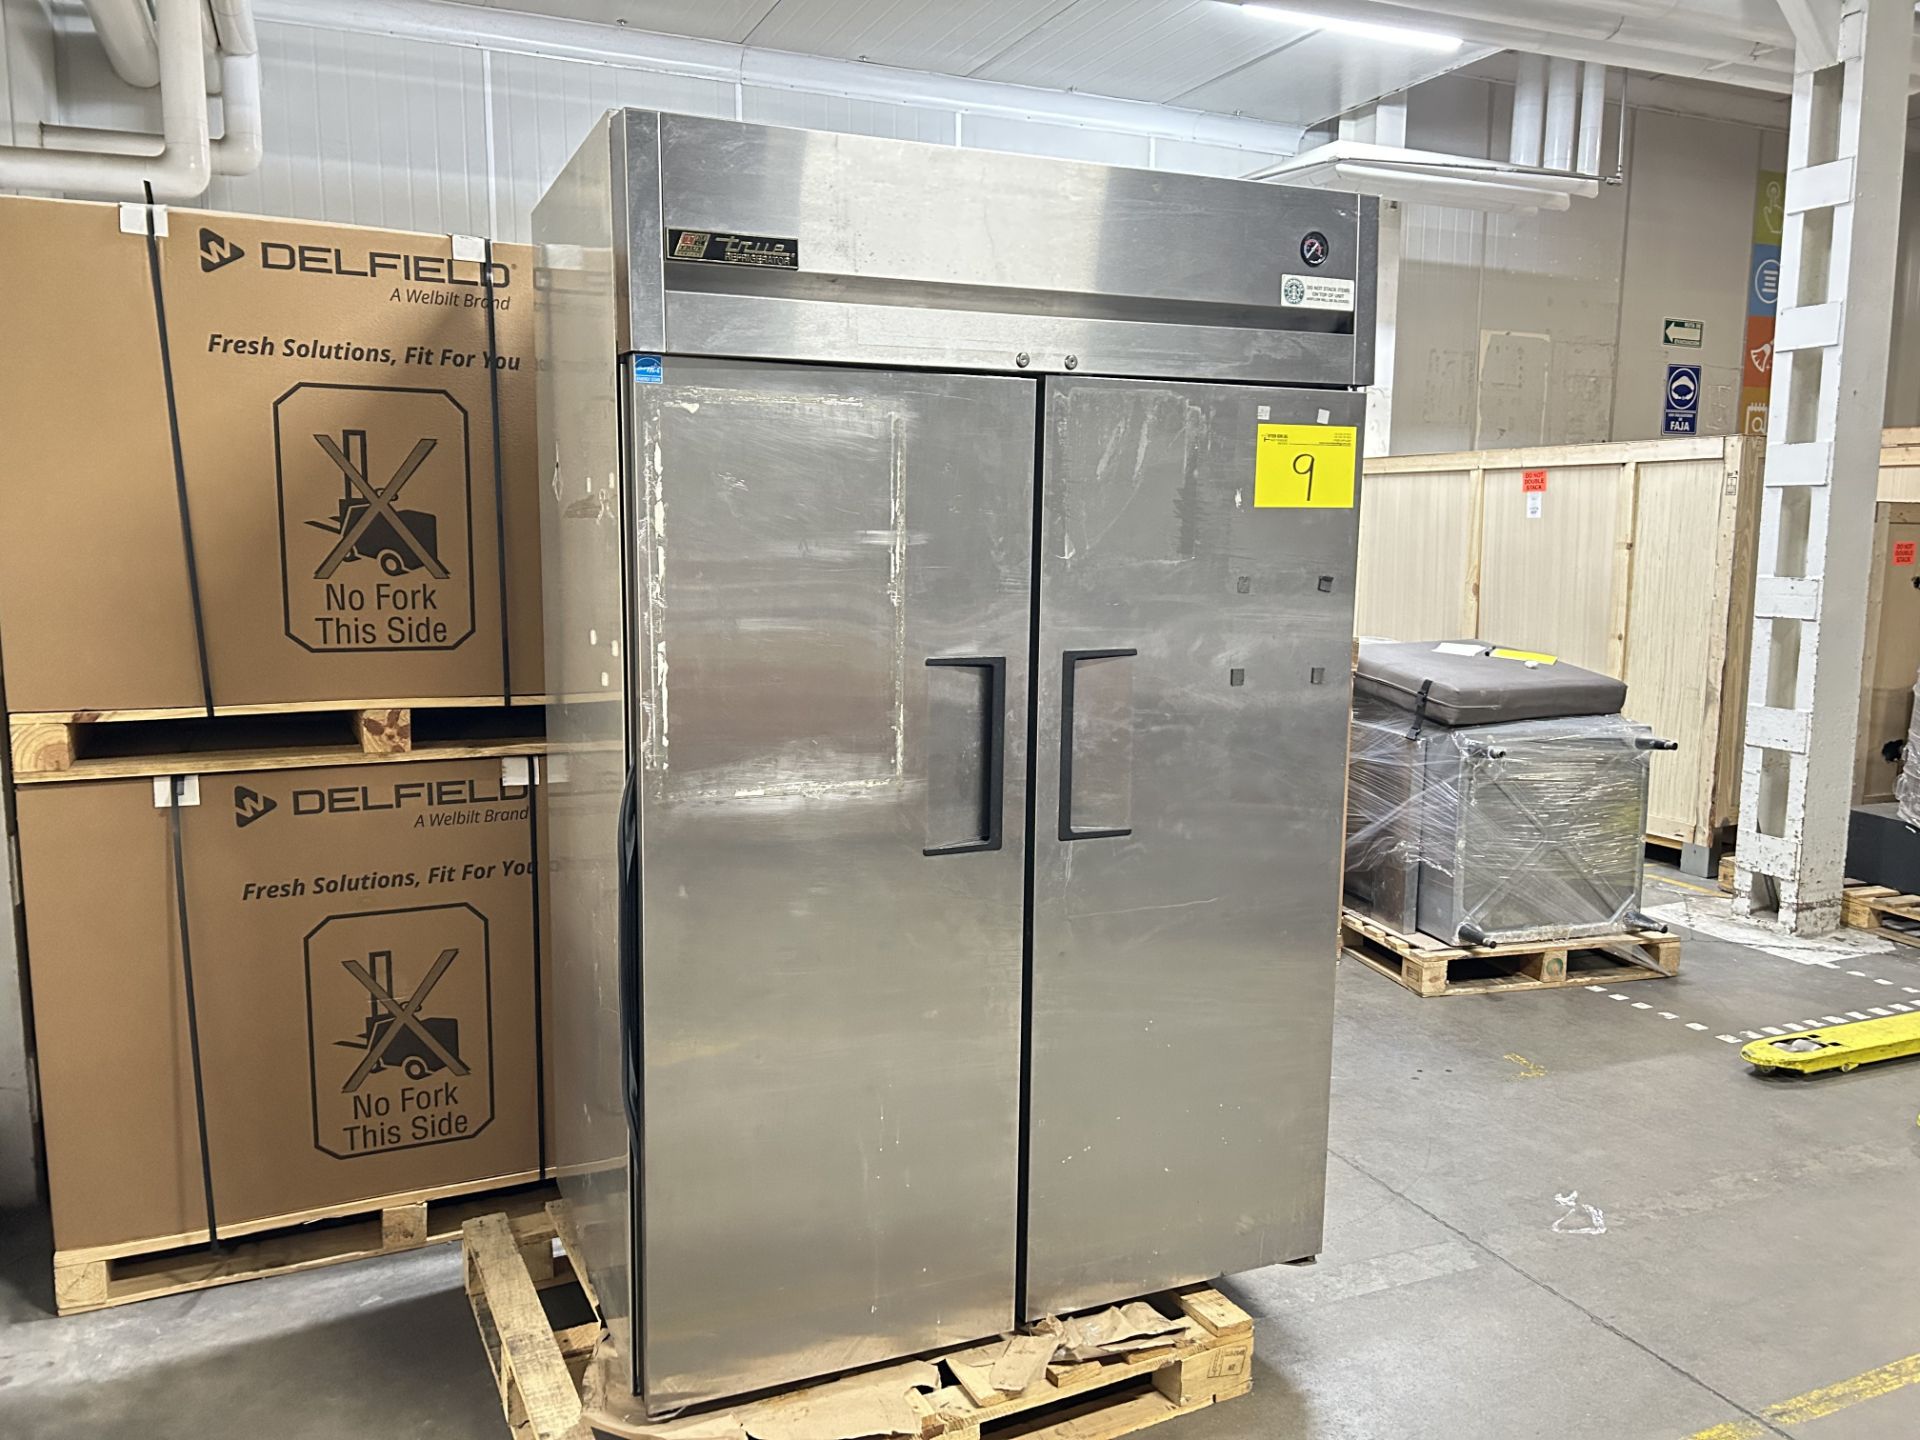 1 congelador vertical Marca true refrigerador, Modelo TG2R-2S, Serie 7661392, Medidas 195cmX88cm127 - Bild 3 aus 6